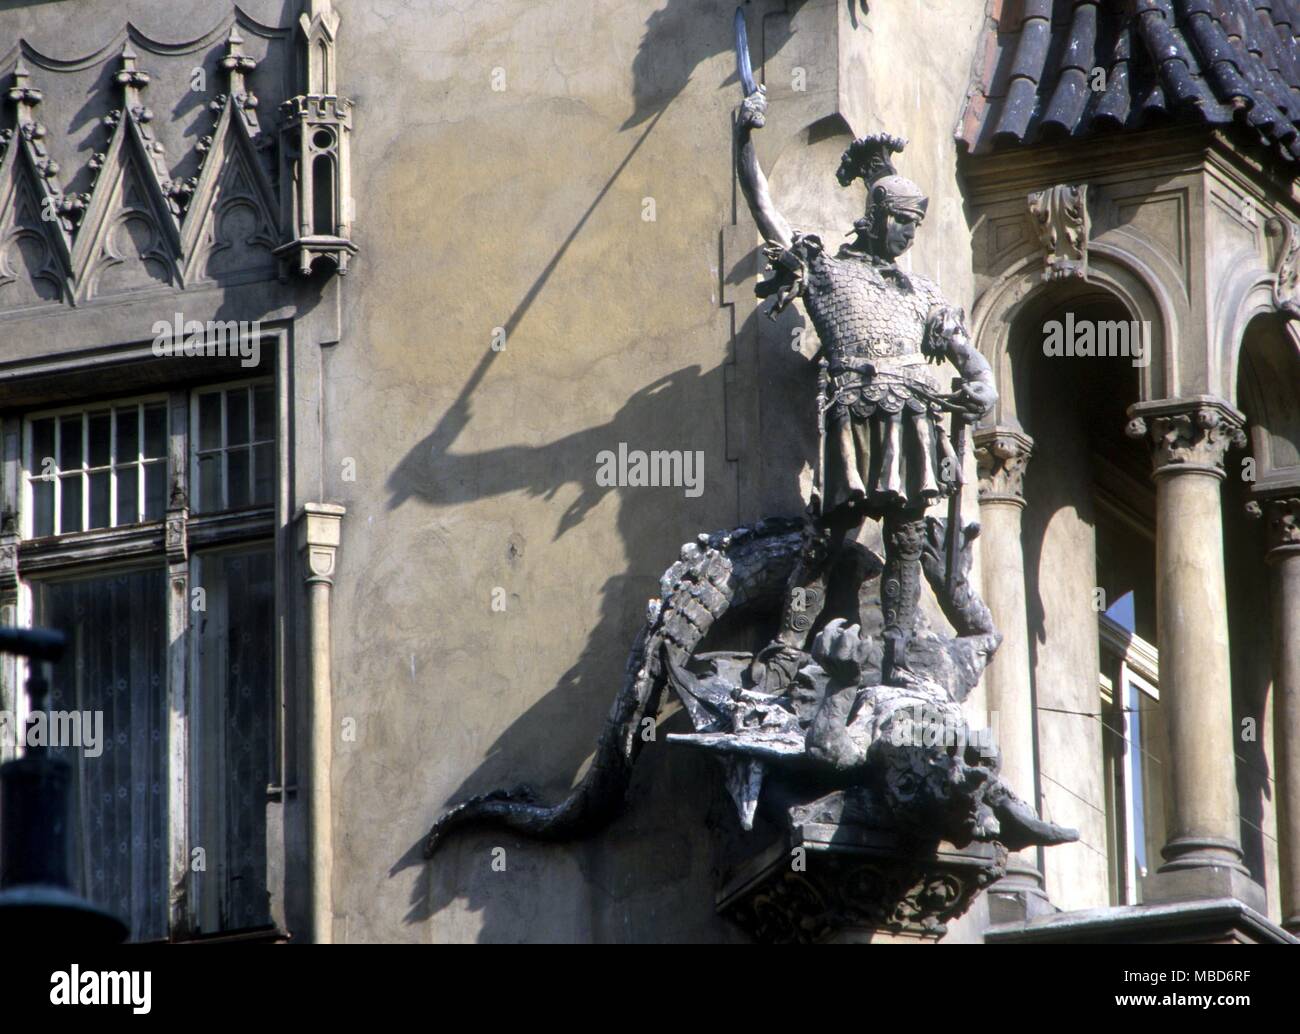 Drago - Cavaliere uccidendo dragon - forse San Giorgio e il drago. Scultura decorativa sulla facciata-angolo di una casa a Praga vicino al centro storico della città. Foto Stock